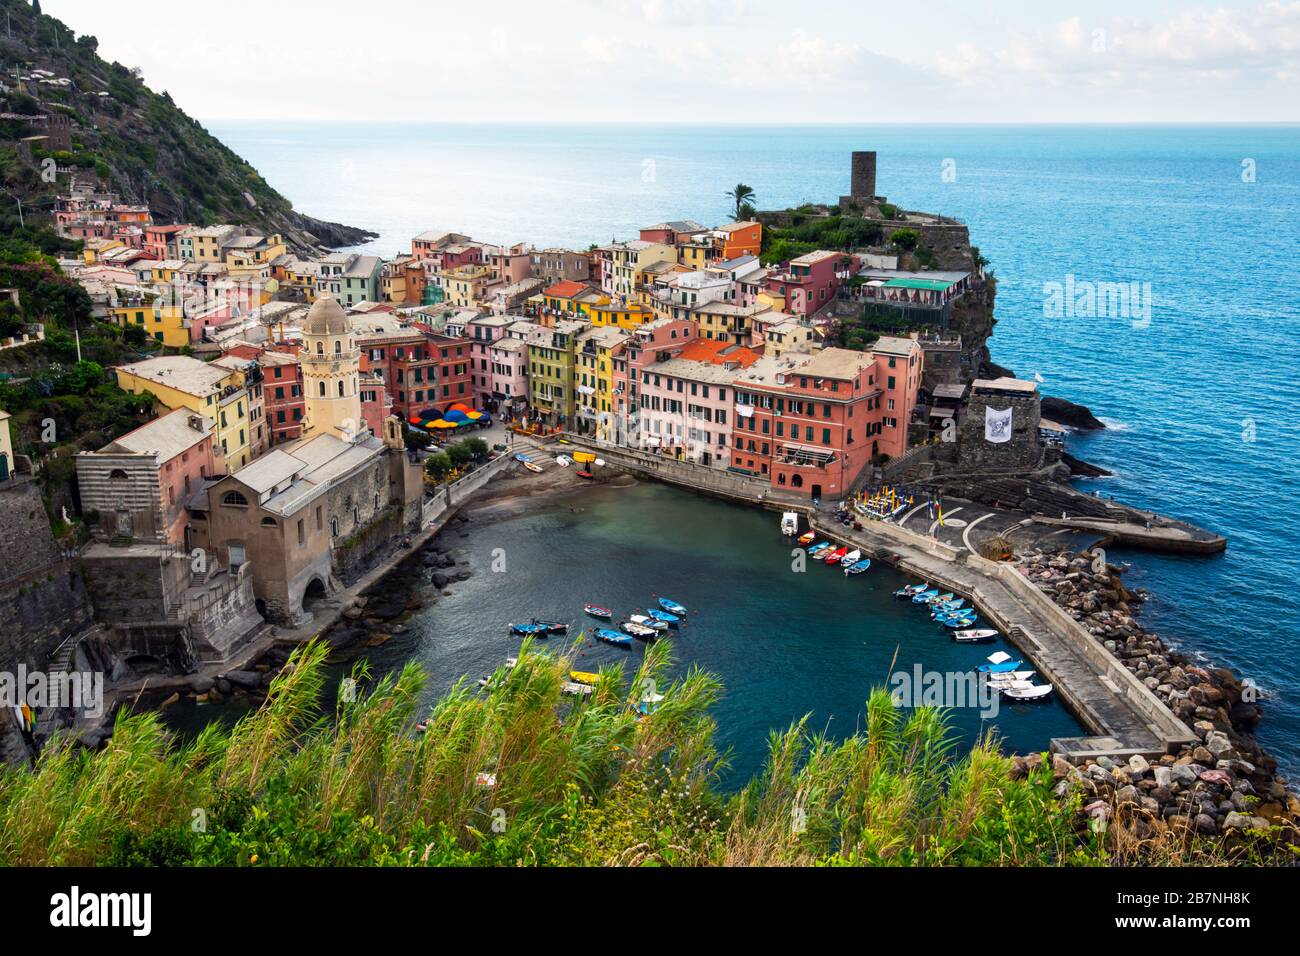 Vue d'été du village de Vernazza - l'un des cinq célèbres villages du parc national de Cinque Terre, région Ligurie, Italie. Photographie de paysage Banque D'Images